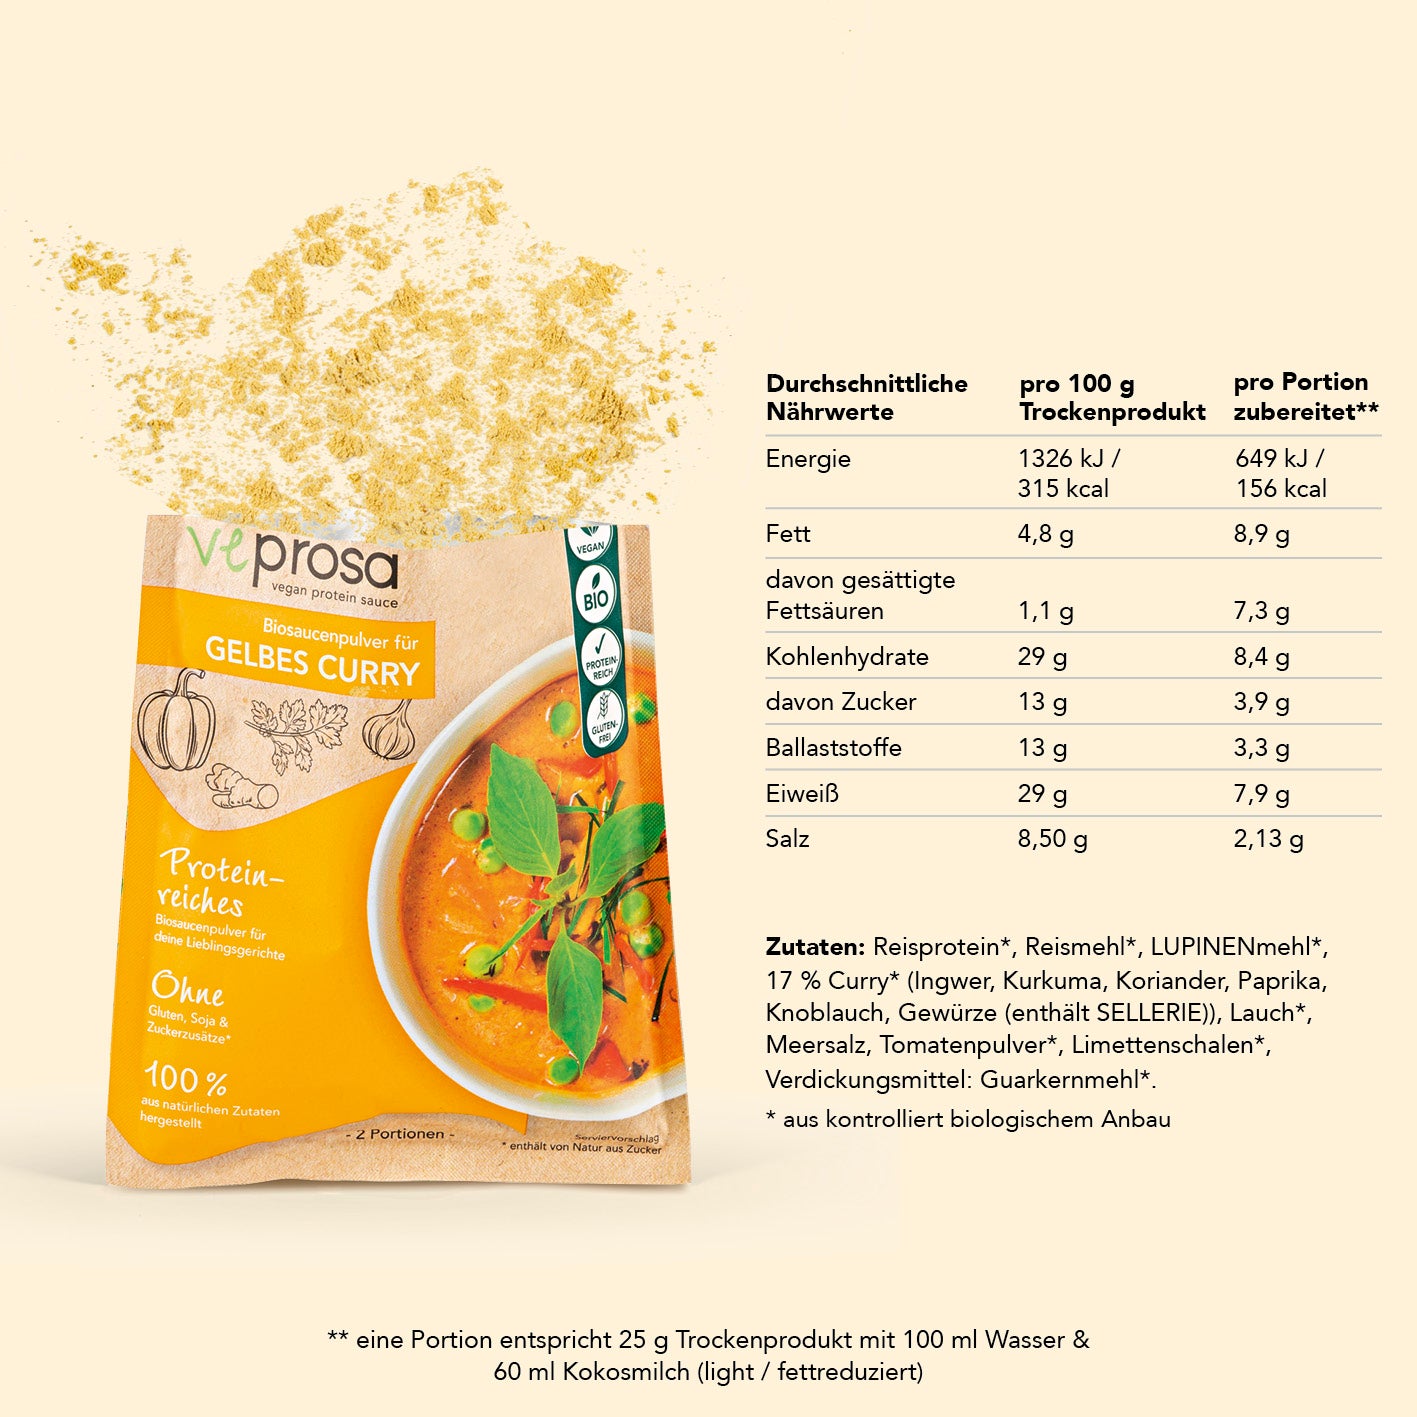 vegan protein sauce Biosaucenpulver für gelbes Curry - 4er-Set (4x 50 g)